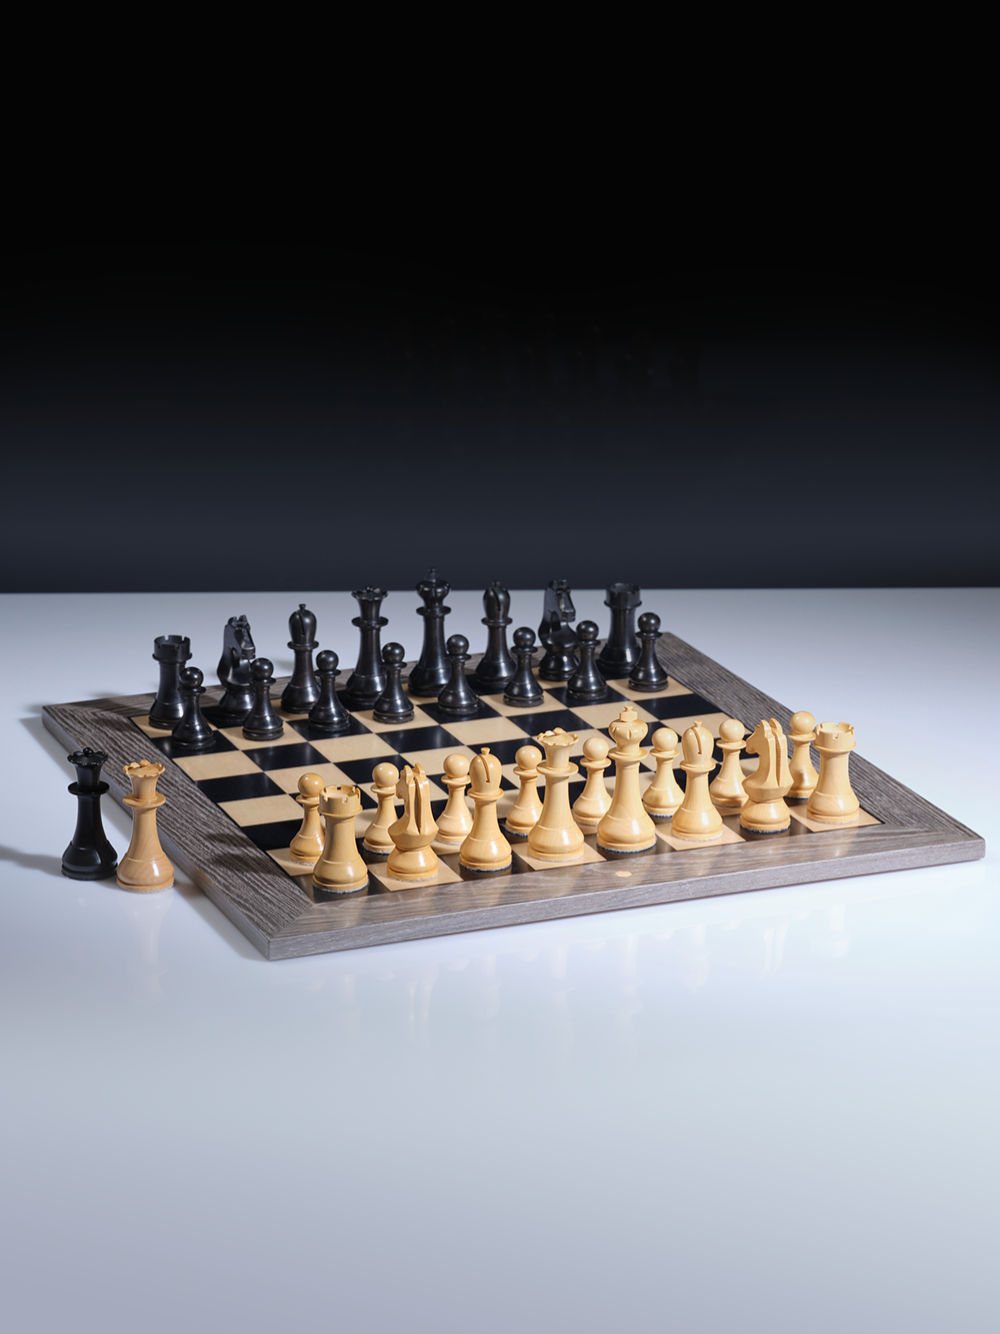 2021 World Chess Championship: Game #5 - The Chess Drum